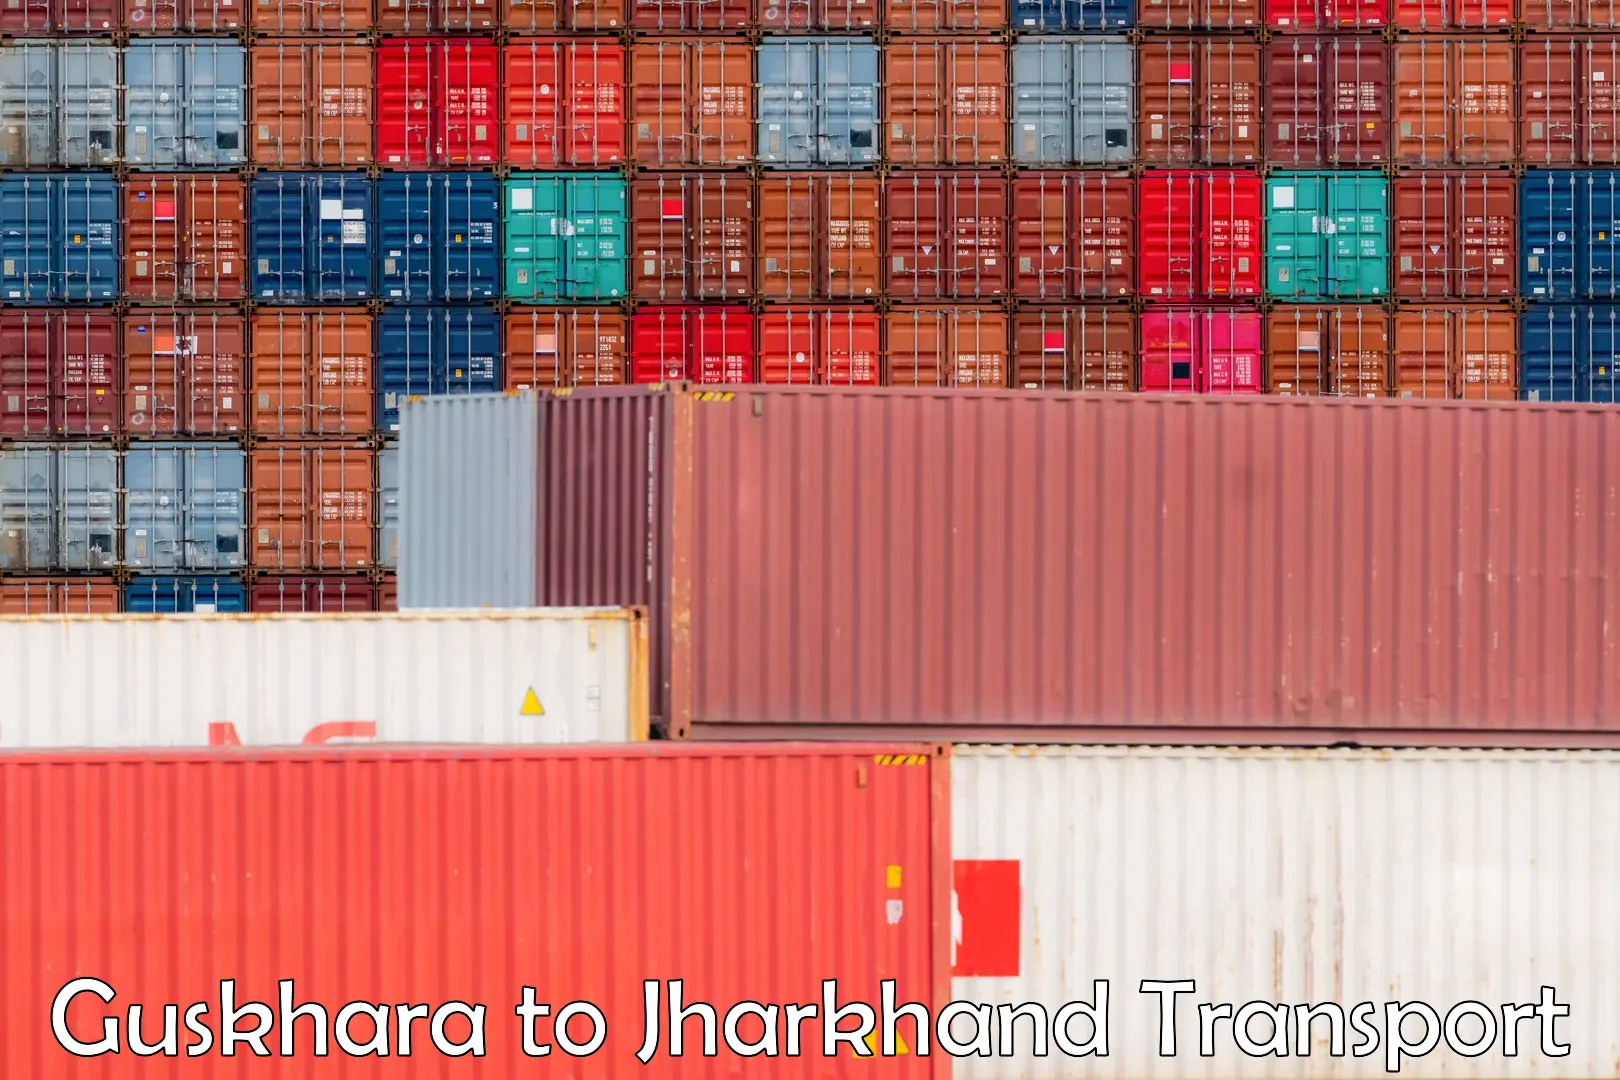 Shipping services Guskhara to IIT Dhanbad